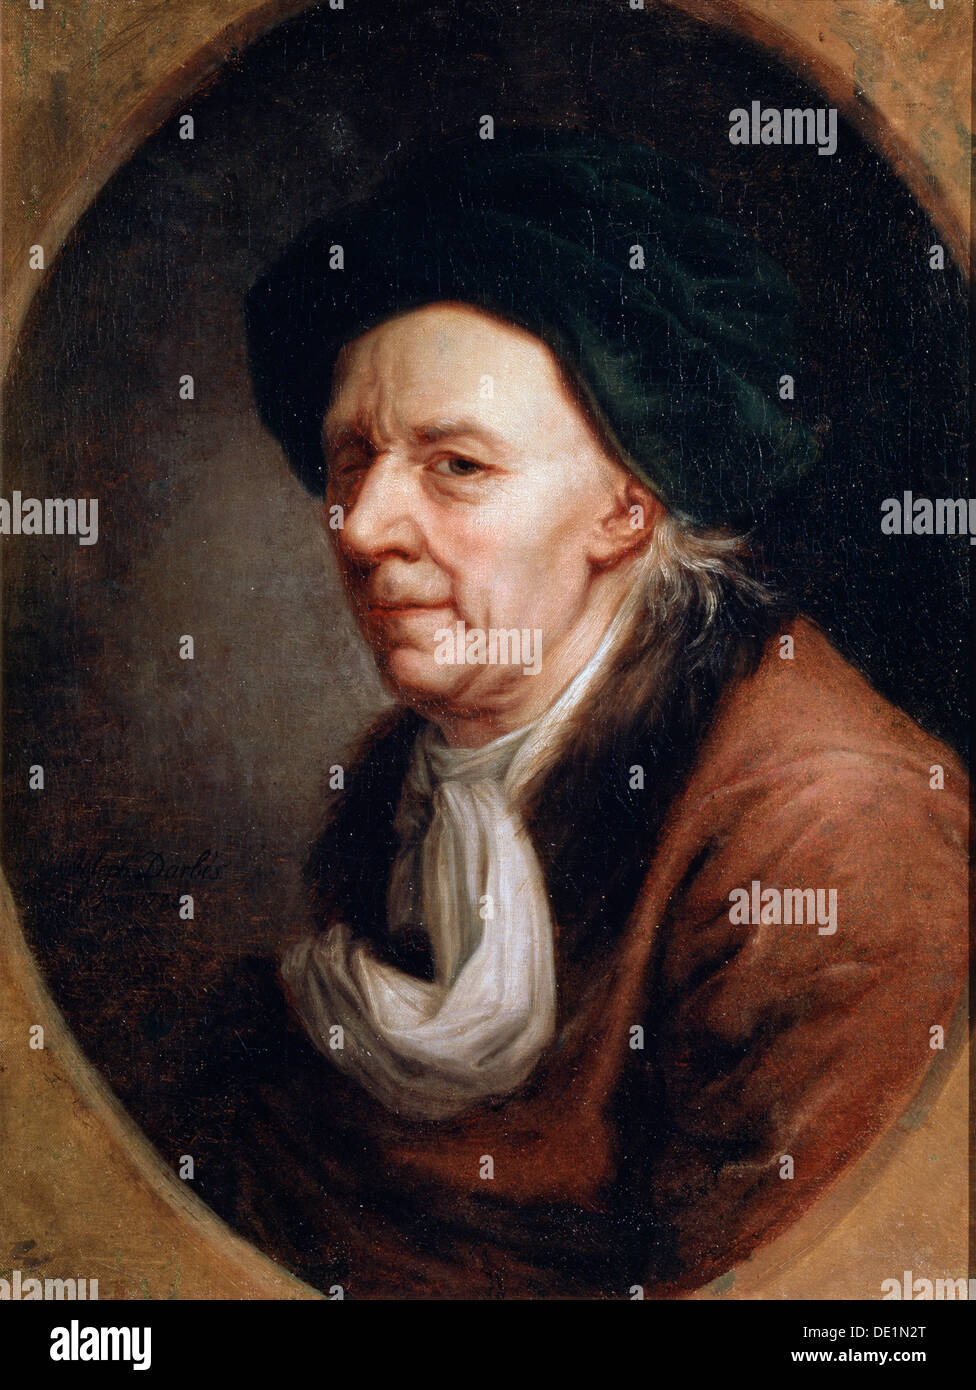 " Ritratto di Mathematican Leonhard Euler', (1707-1783), pittura tedesca del XVIII secolo. Artista: Joseph Friedrich August Darbes Foto Stock